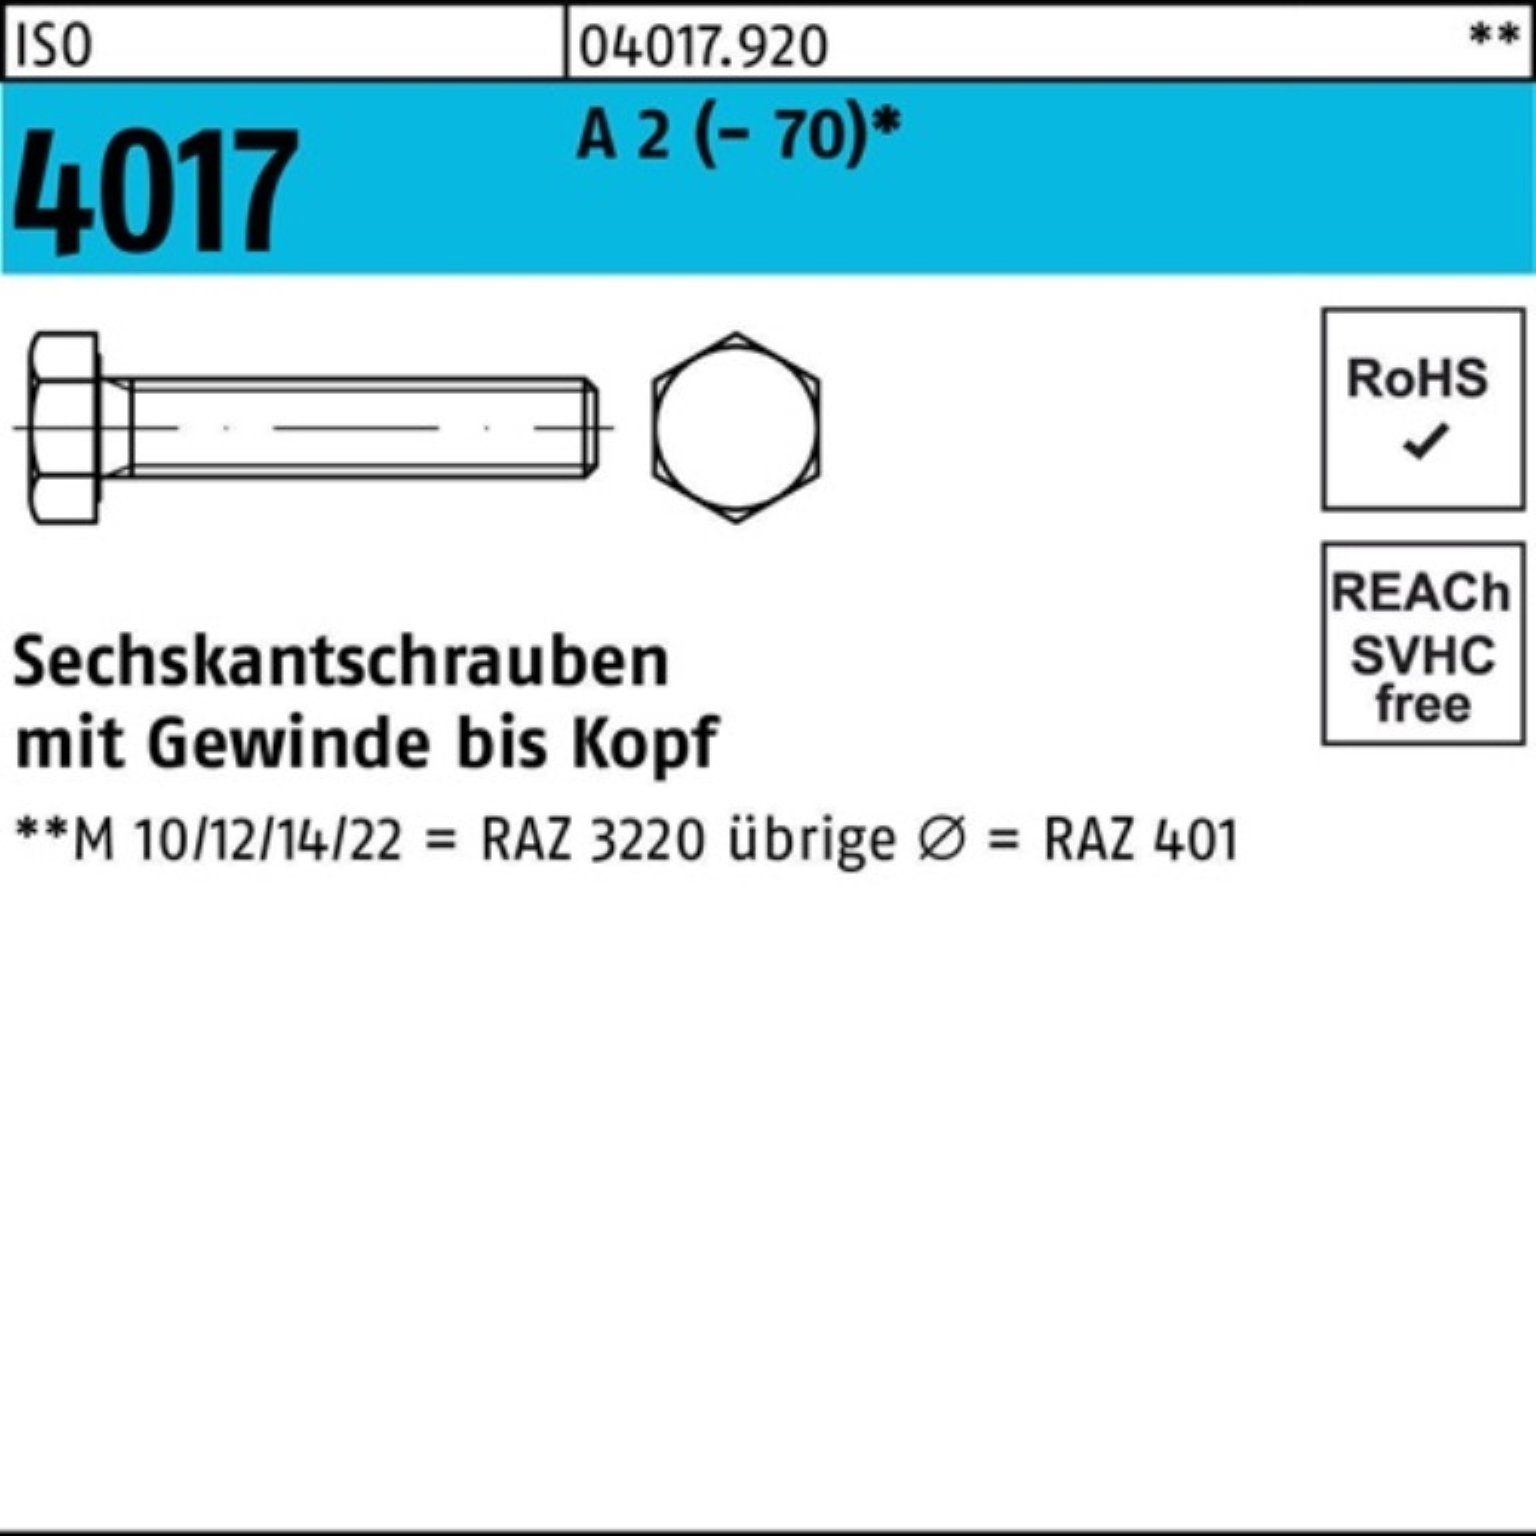 Bufab Sechskantschraube 100er Pack 75 VG 4017 M14x 50 Stück Sechskantschraube ISO 2 A (70)